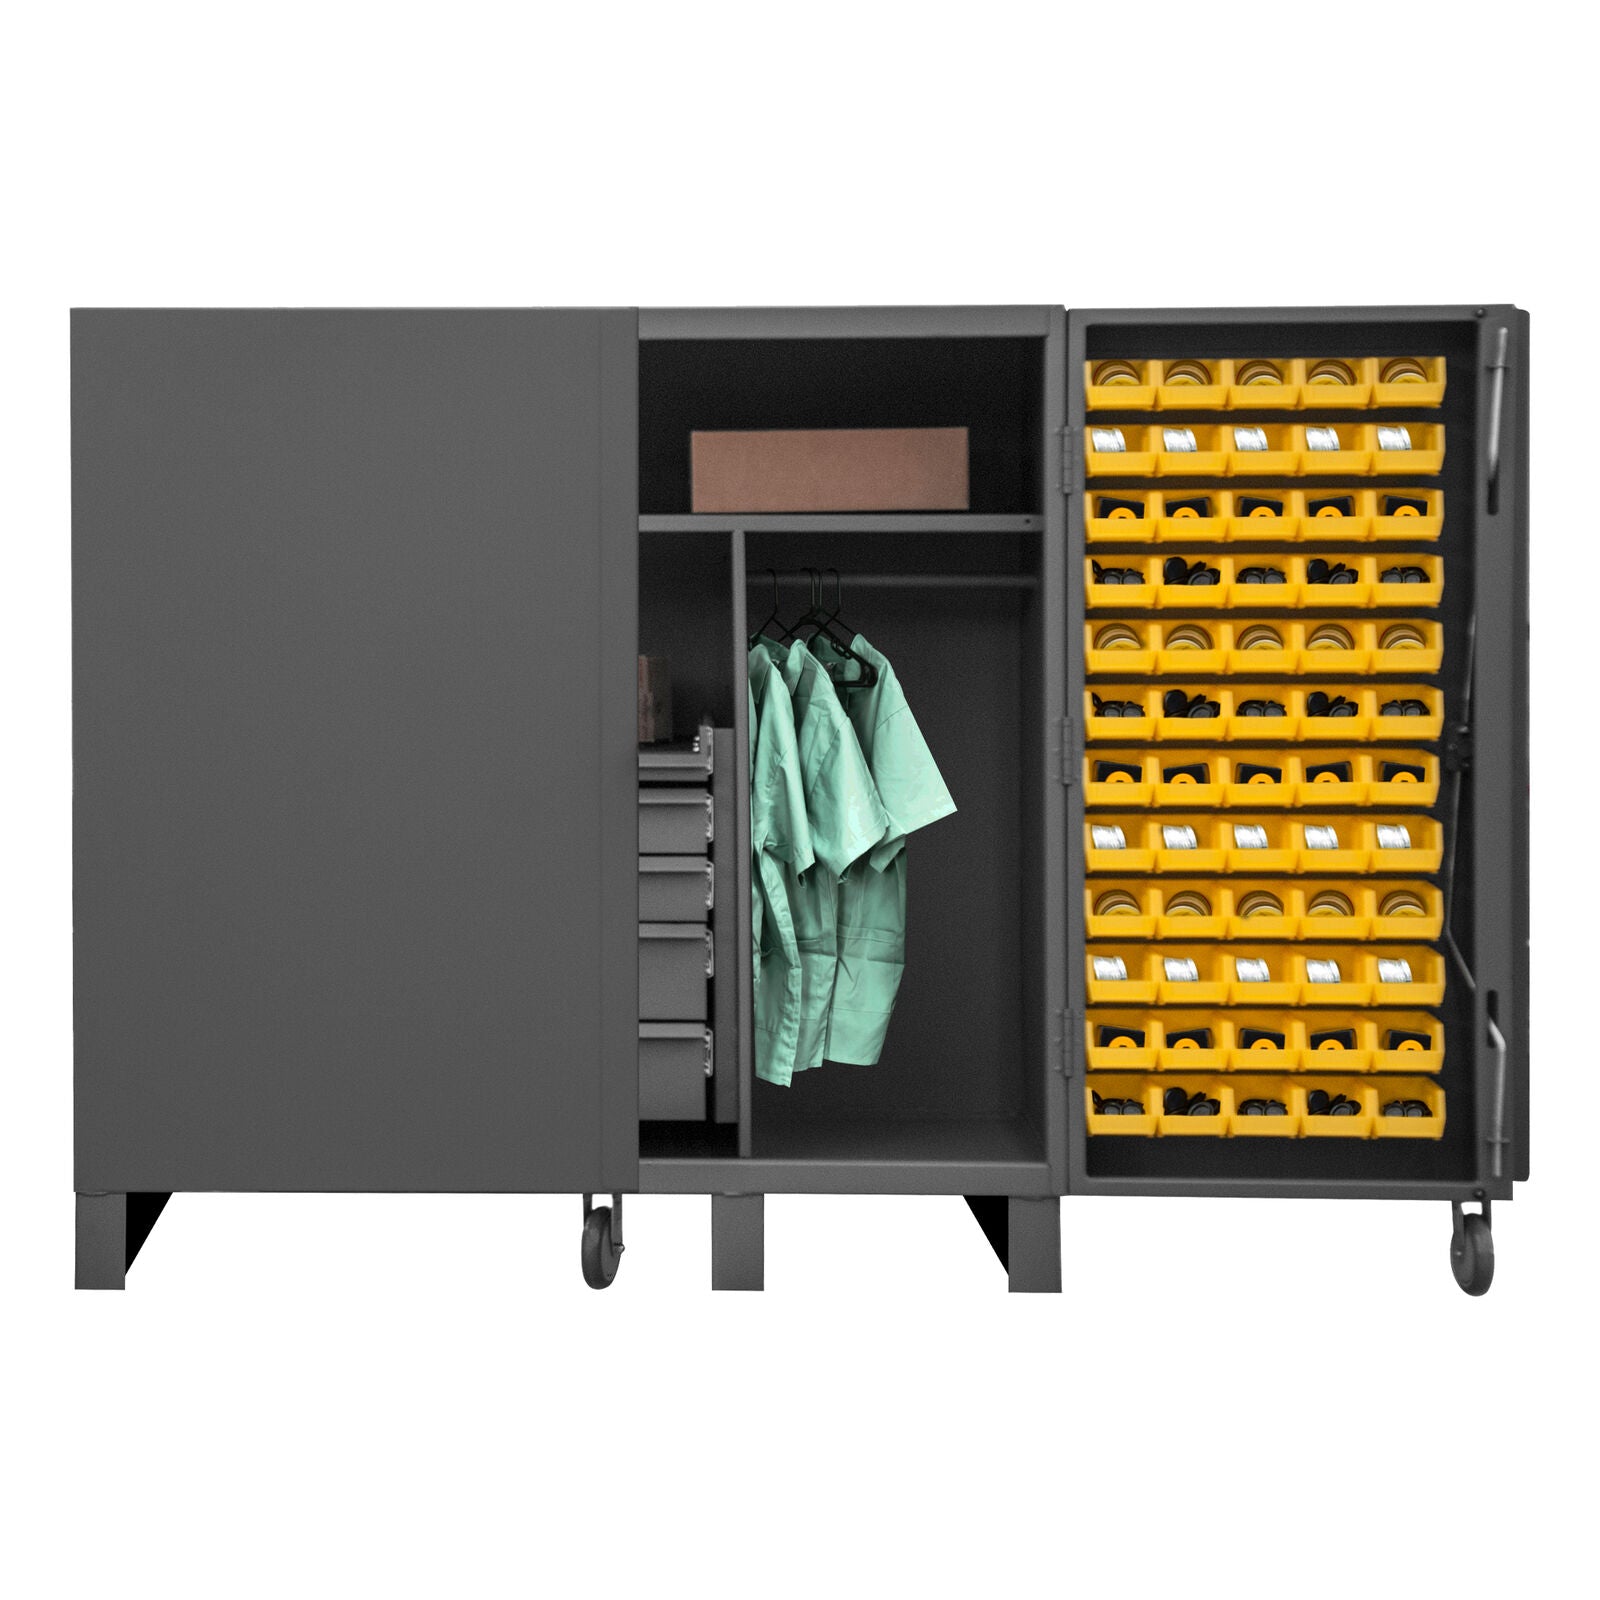 Storage Cabinet Heavy Duty with Bins Lockable Durham MFG 60 W x 36 D x 78 H HDC60-72DC18TB5B95